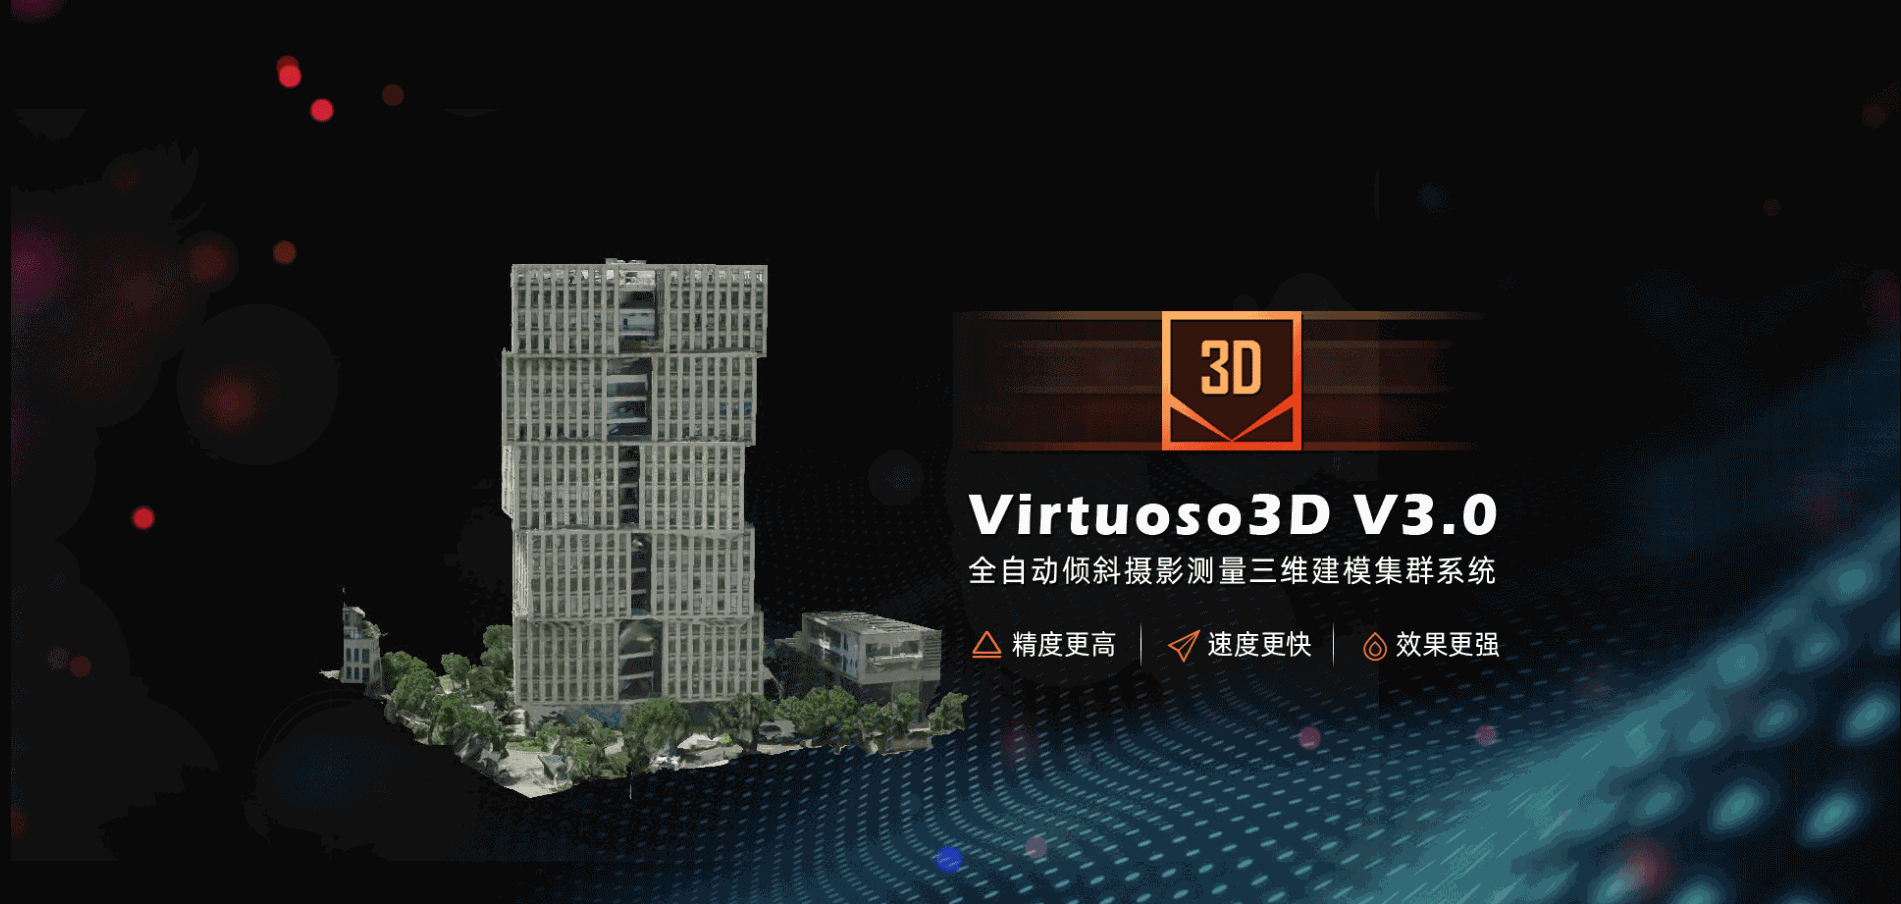 2021.11.22 Virtuoso3D V3.0 banner圖